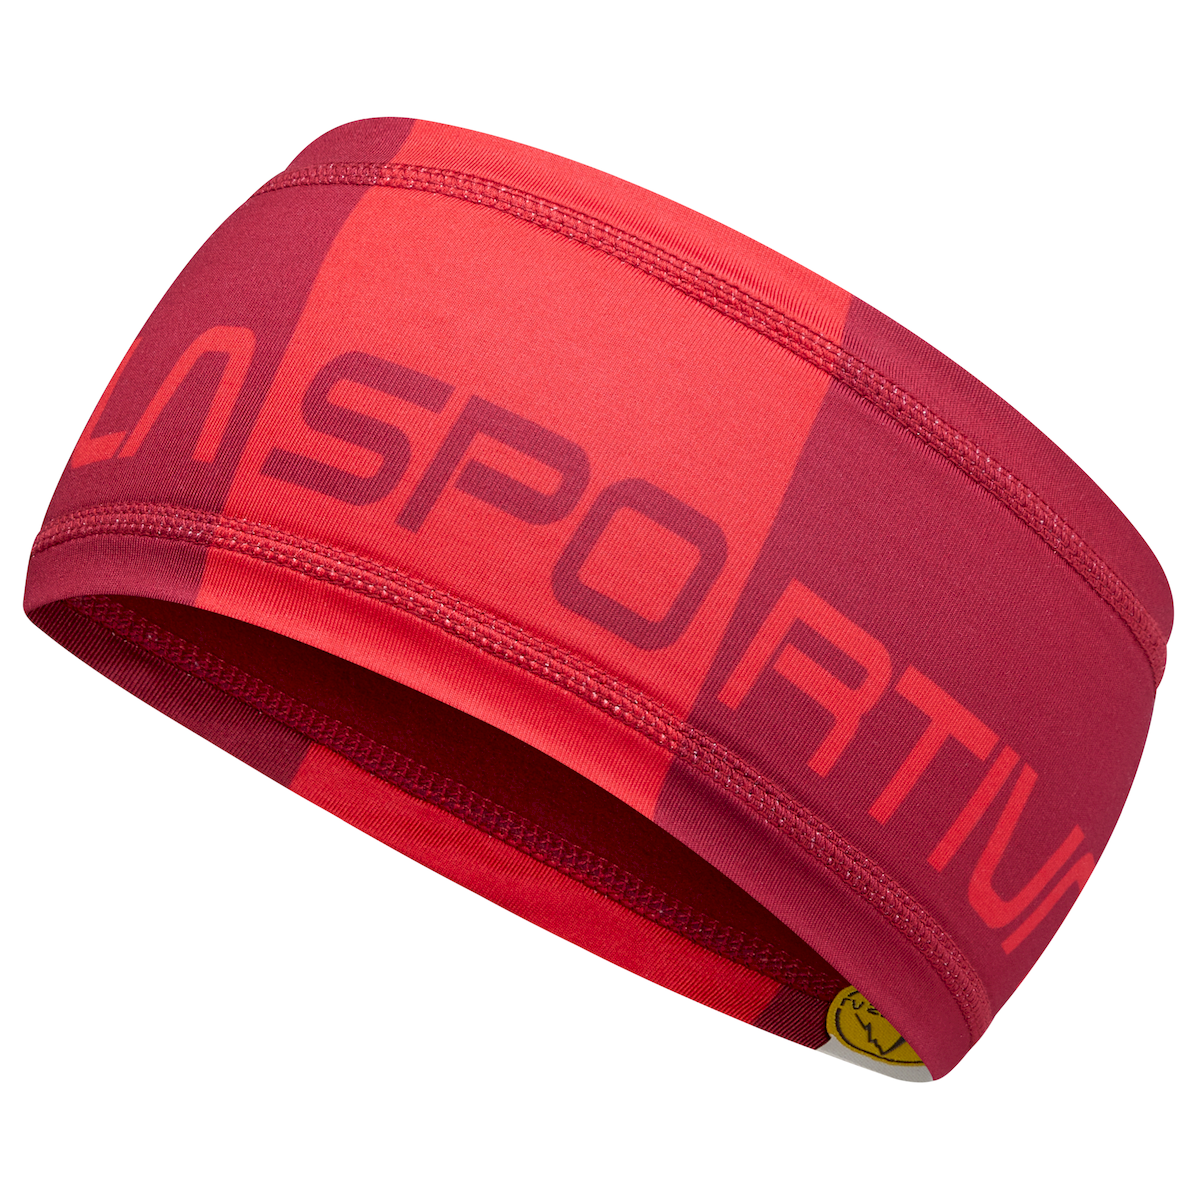 La Sportiva Diagonal Headband - Fascia sportiva per la fronte